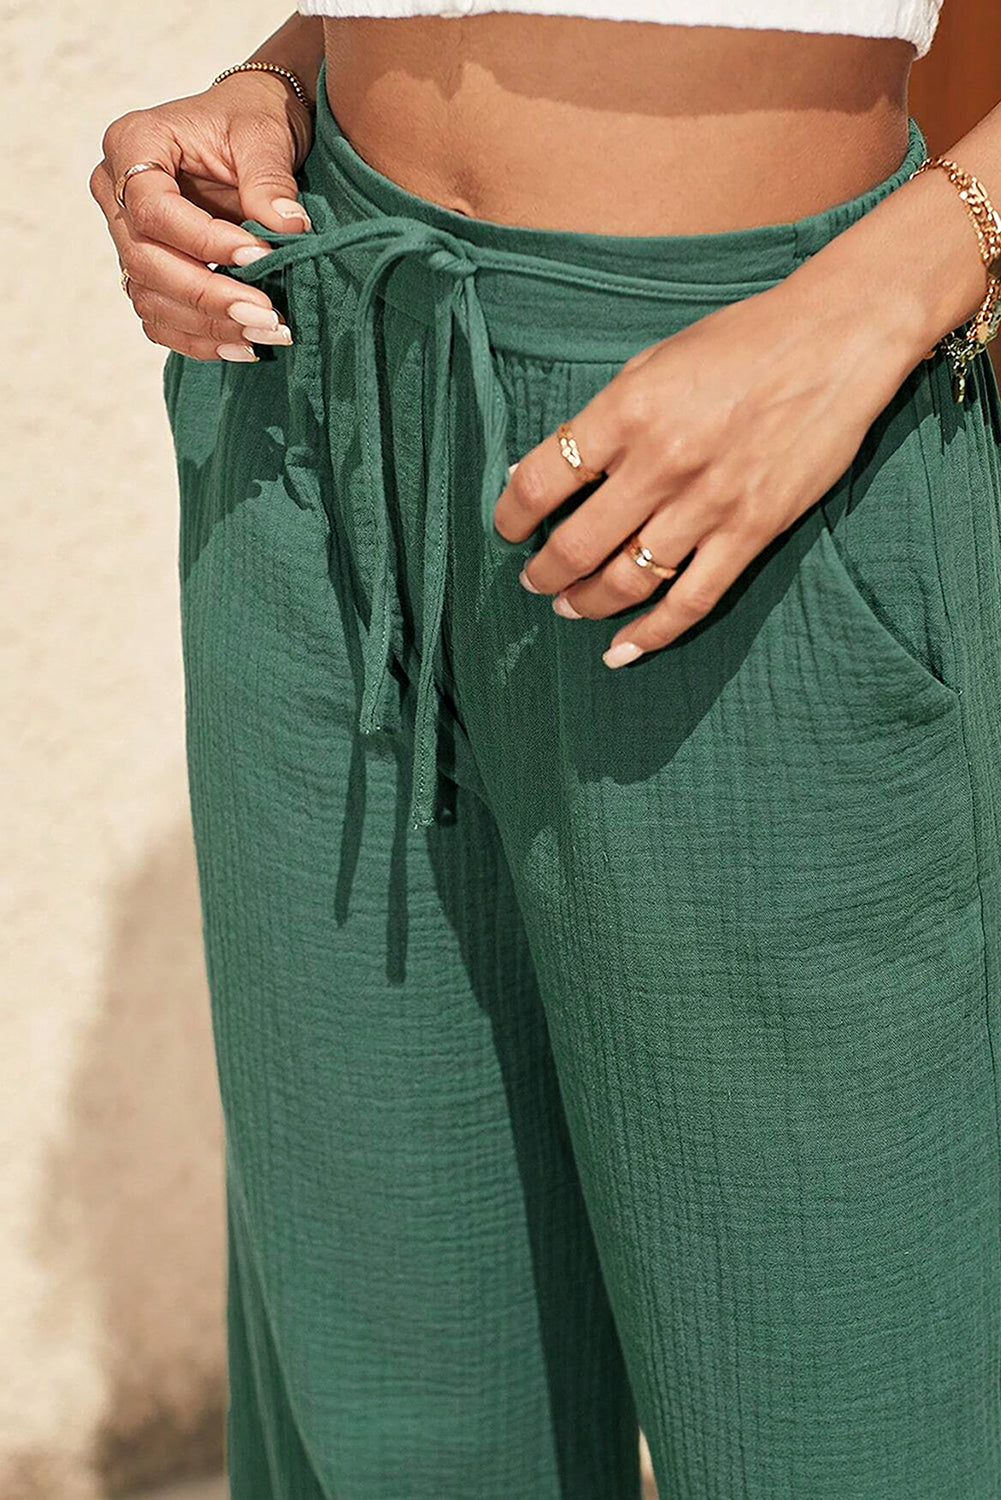 Široke hlače z visokim pasom in megleno zelene teksturirane vrvice